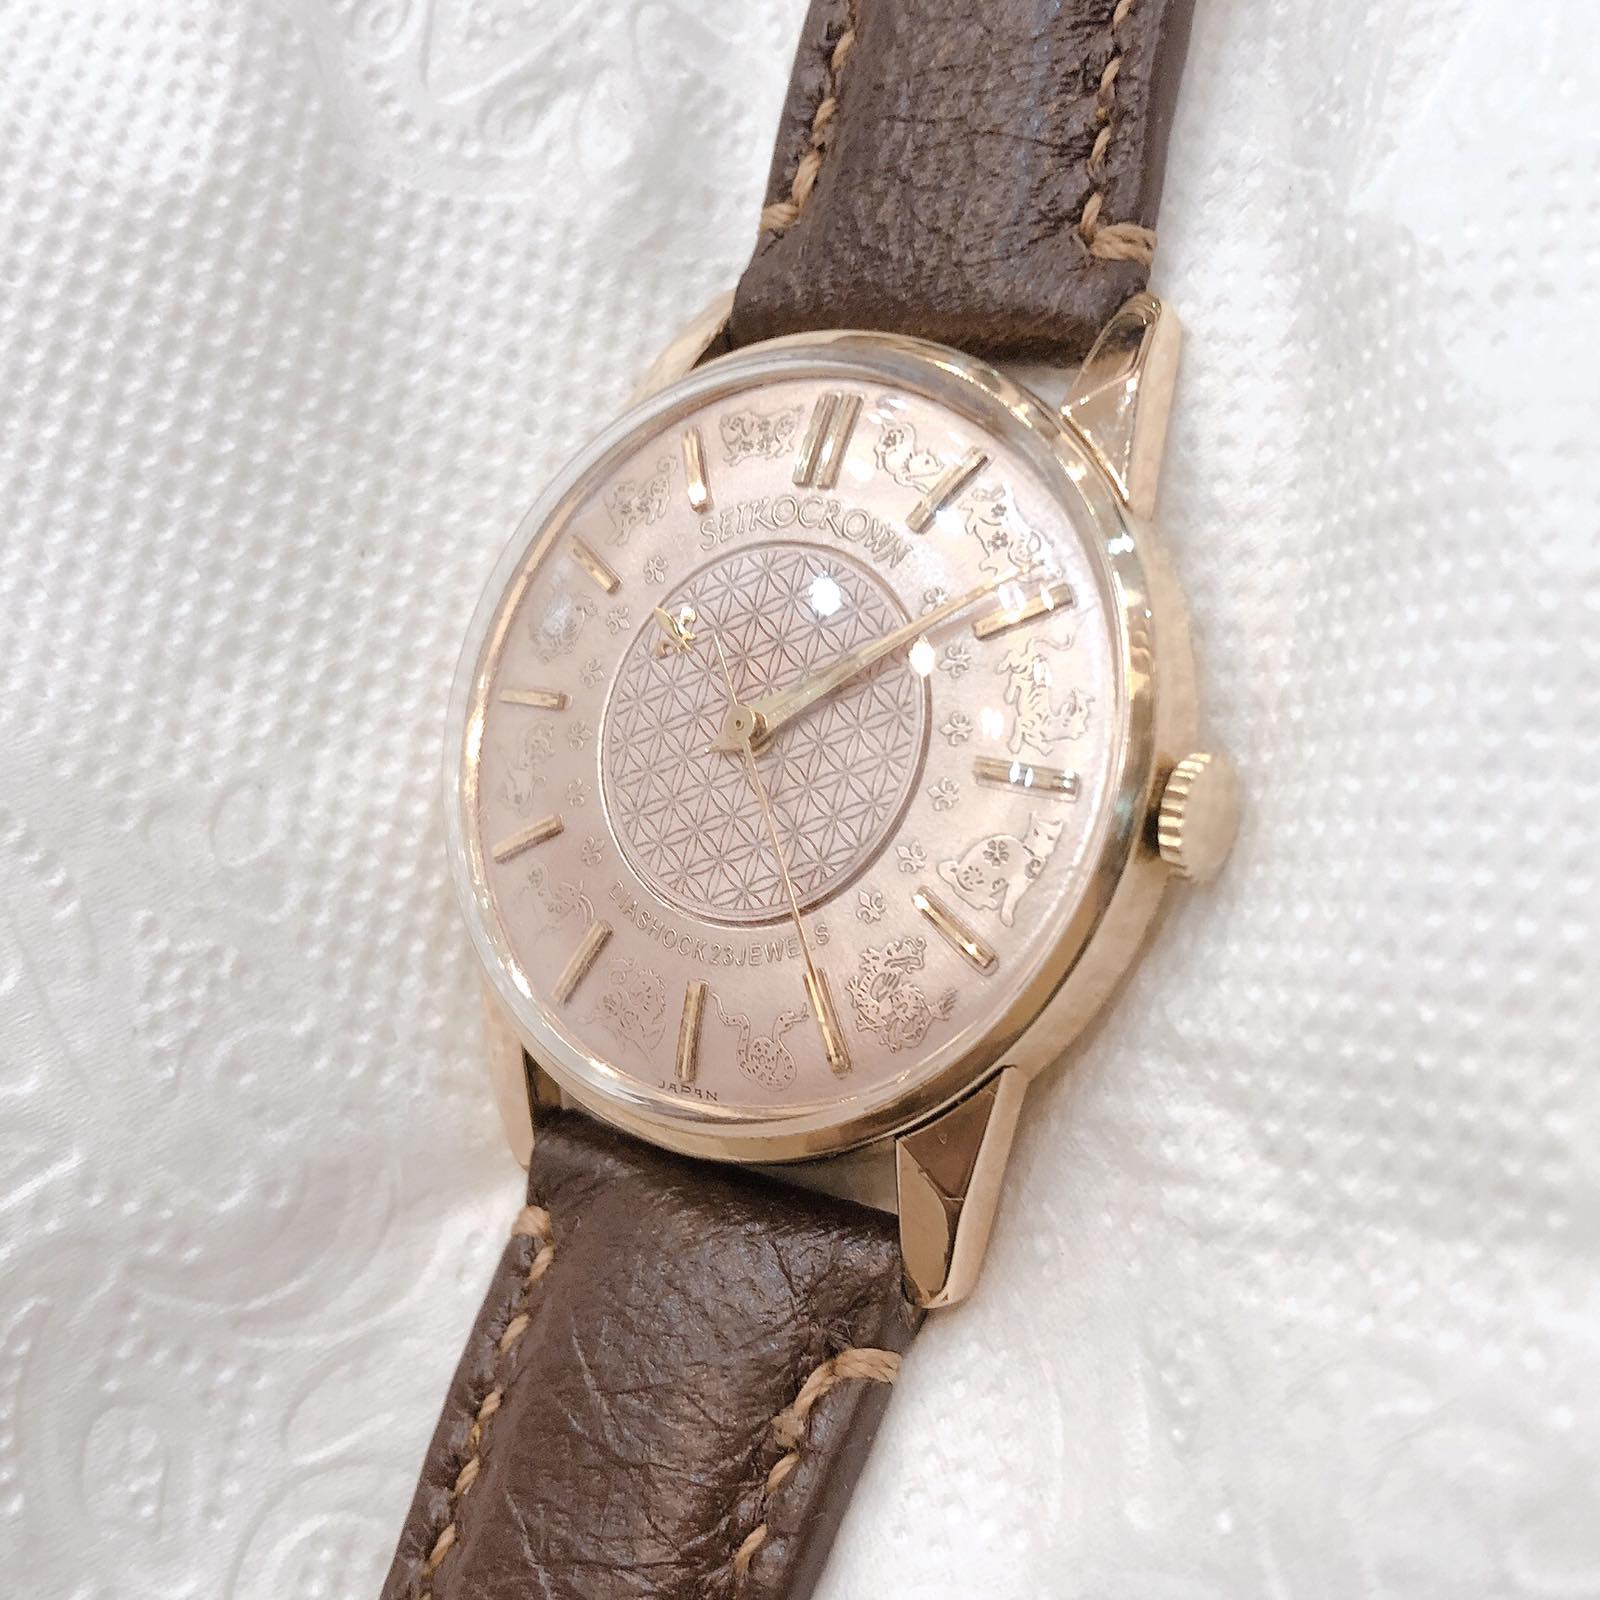 Đồng hồ cổ Seiko Crown kim đĩa 12 con giáp lên dây 14k goldfilled chính hãng nhật bản